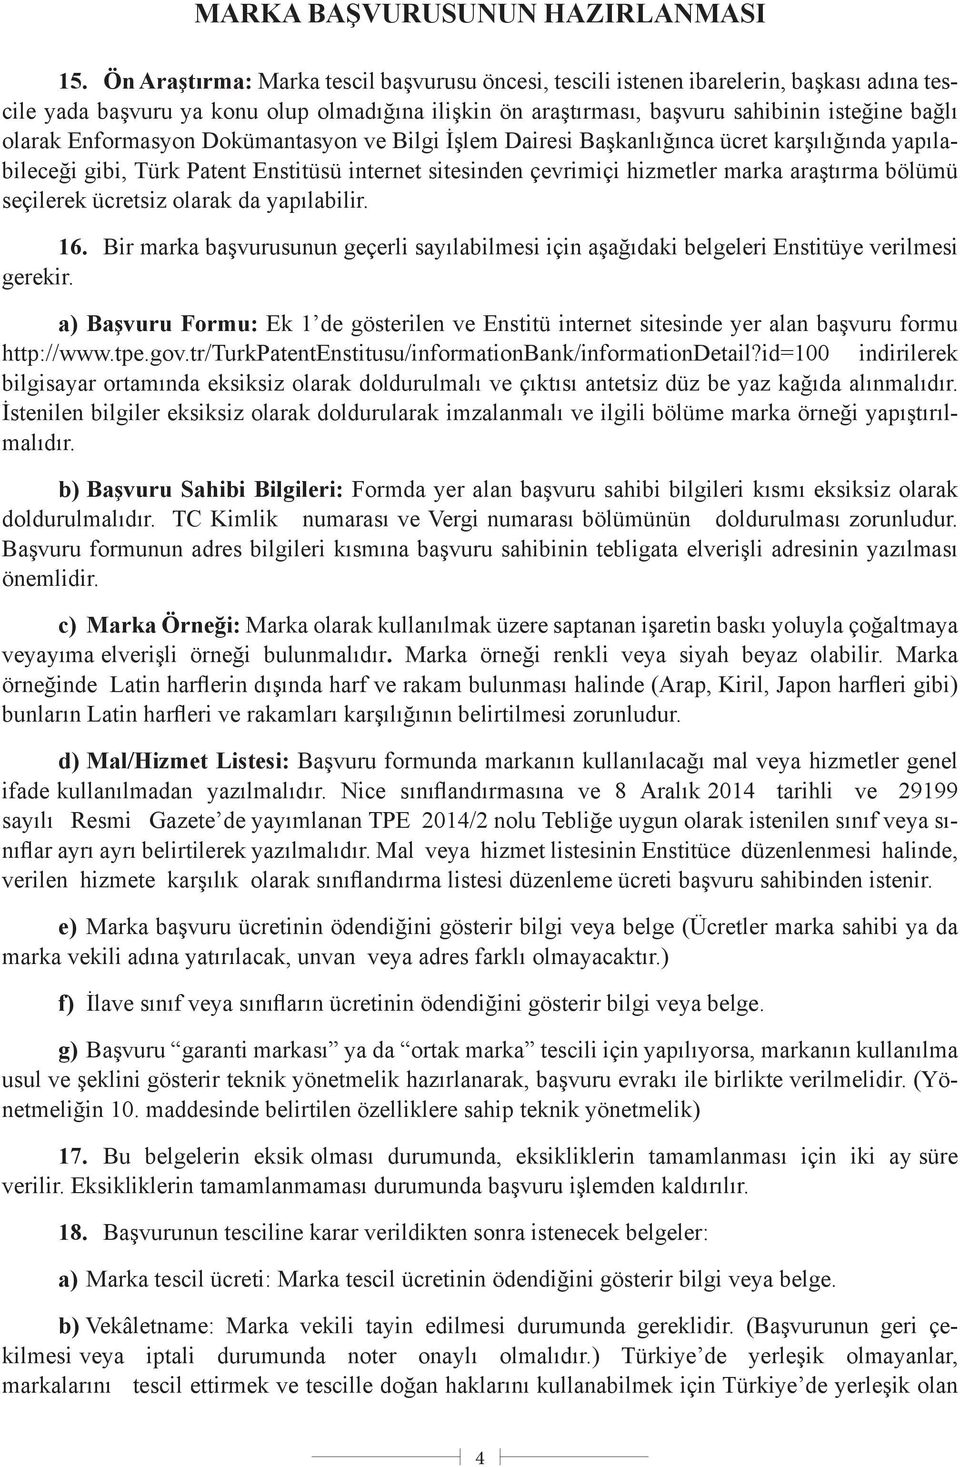 Enformasyon Dokümantasyon ve Bilgi İşlem Dairesi Başkanlığınca ücret karşılığında yapılabileceği gibi, Türk Patent Enstitüsü internet sitesinden çevrimiçi hizmetler marka araştırma bölümü seçilerek